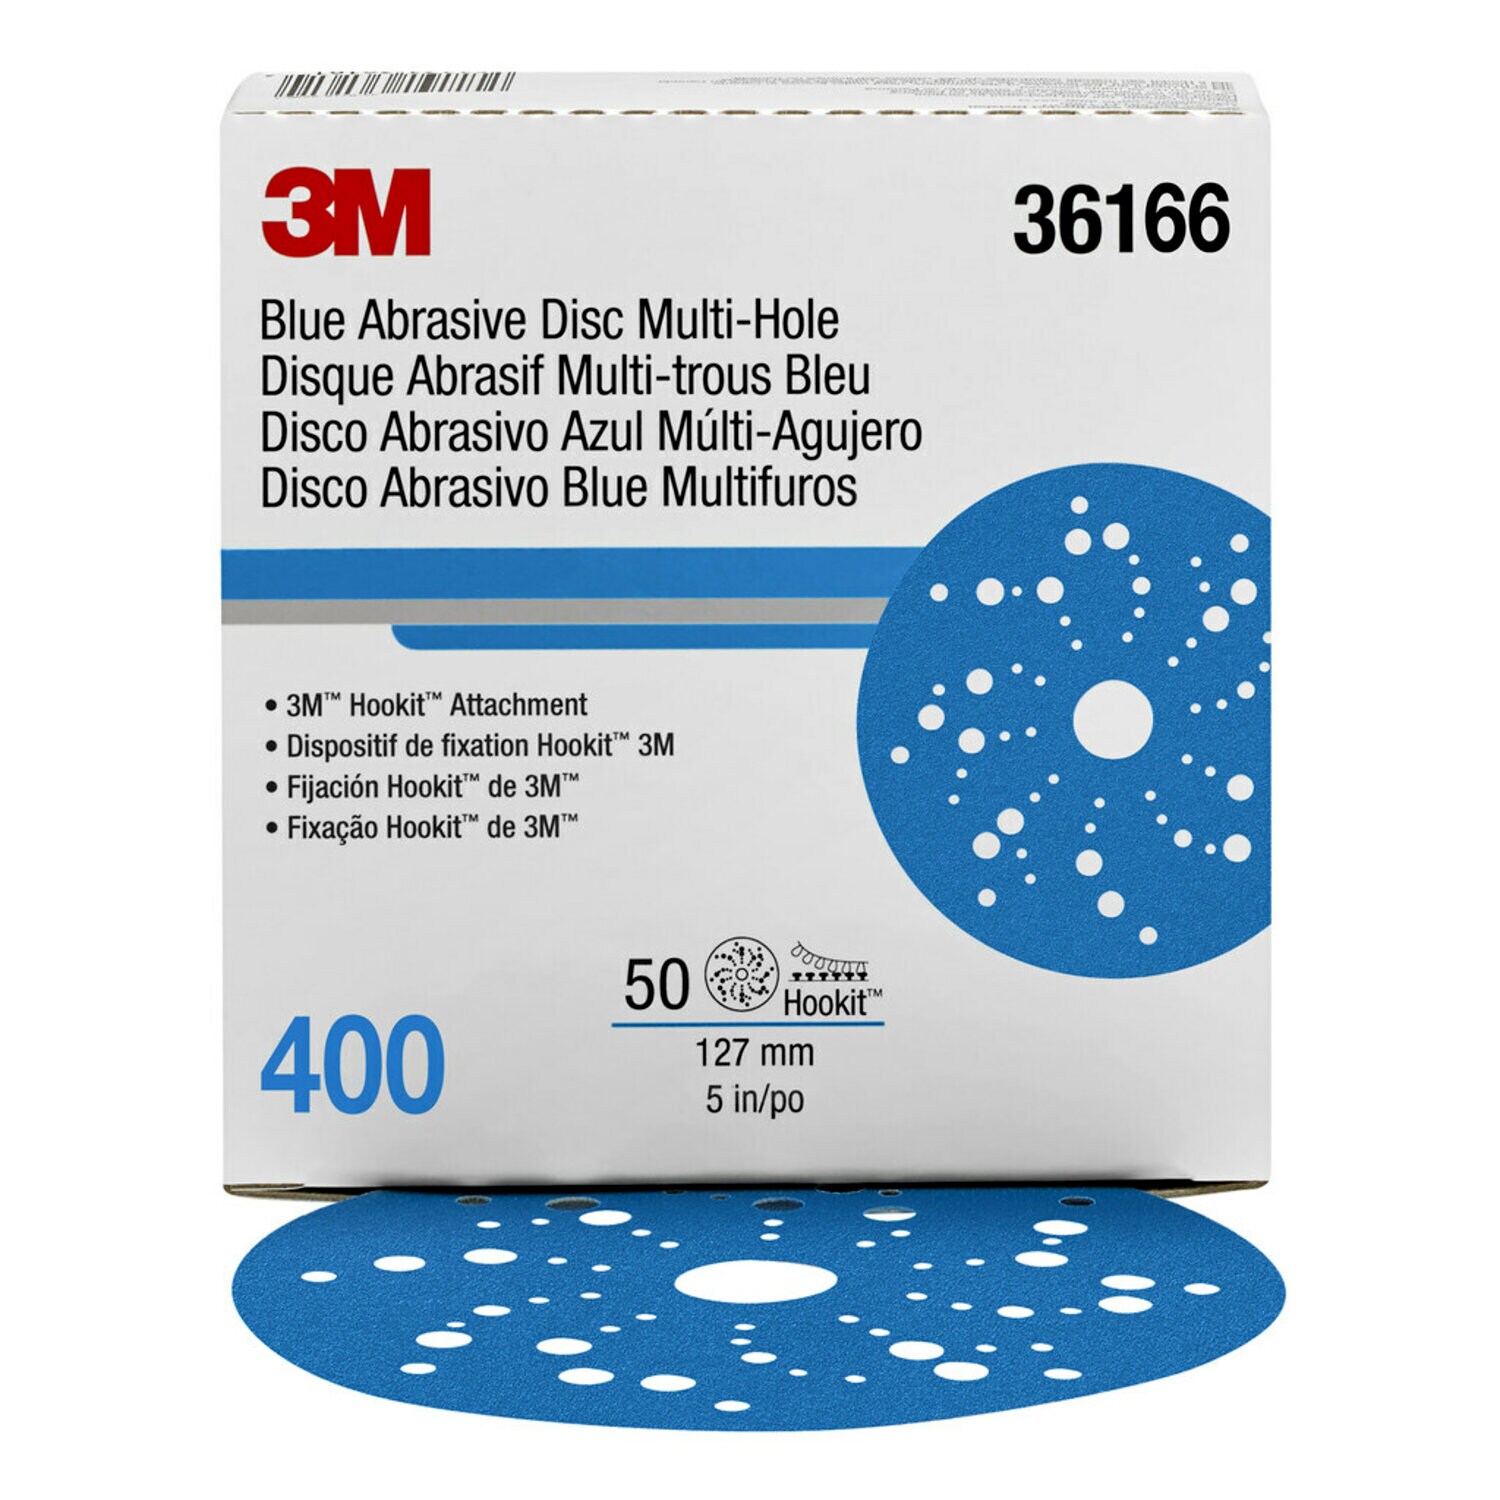 7100091239 - 3M Hookit Blue Abrasive Disc Multi-hole, 36166, 5 in, 400 grade, 50
discs per carton, 4 cartons per case